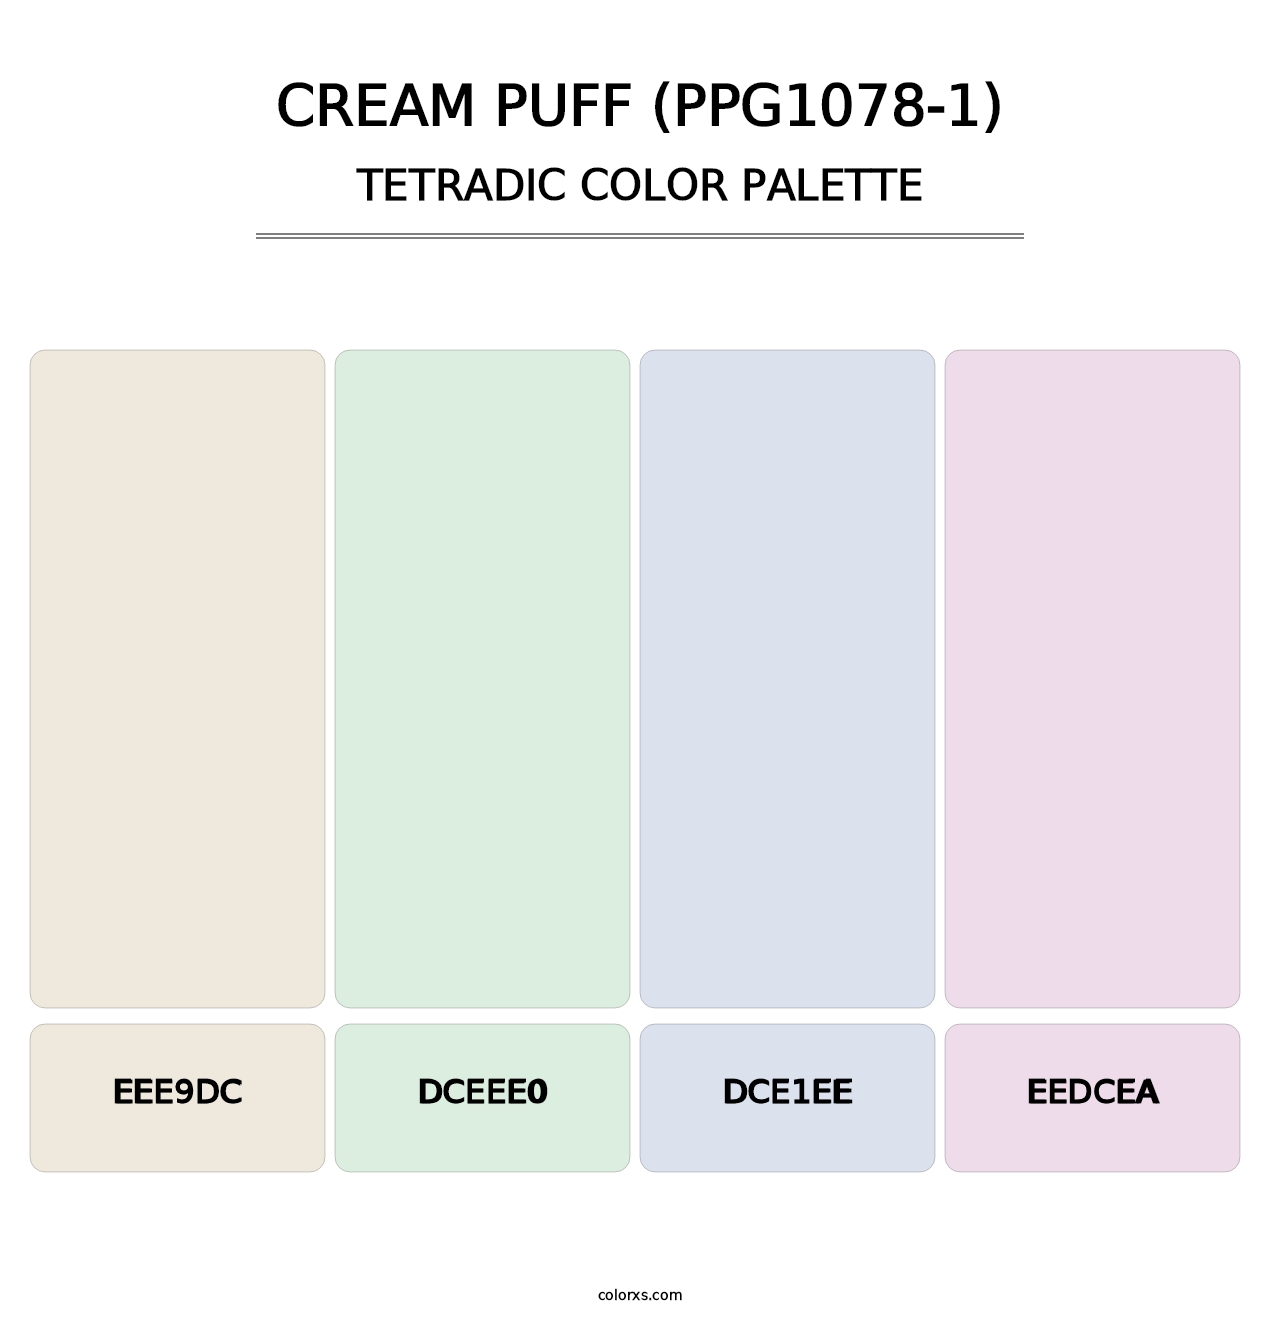 Cream Puff (PPG1078-1) - Tetradic Color Palette